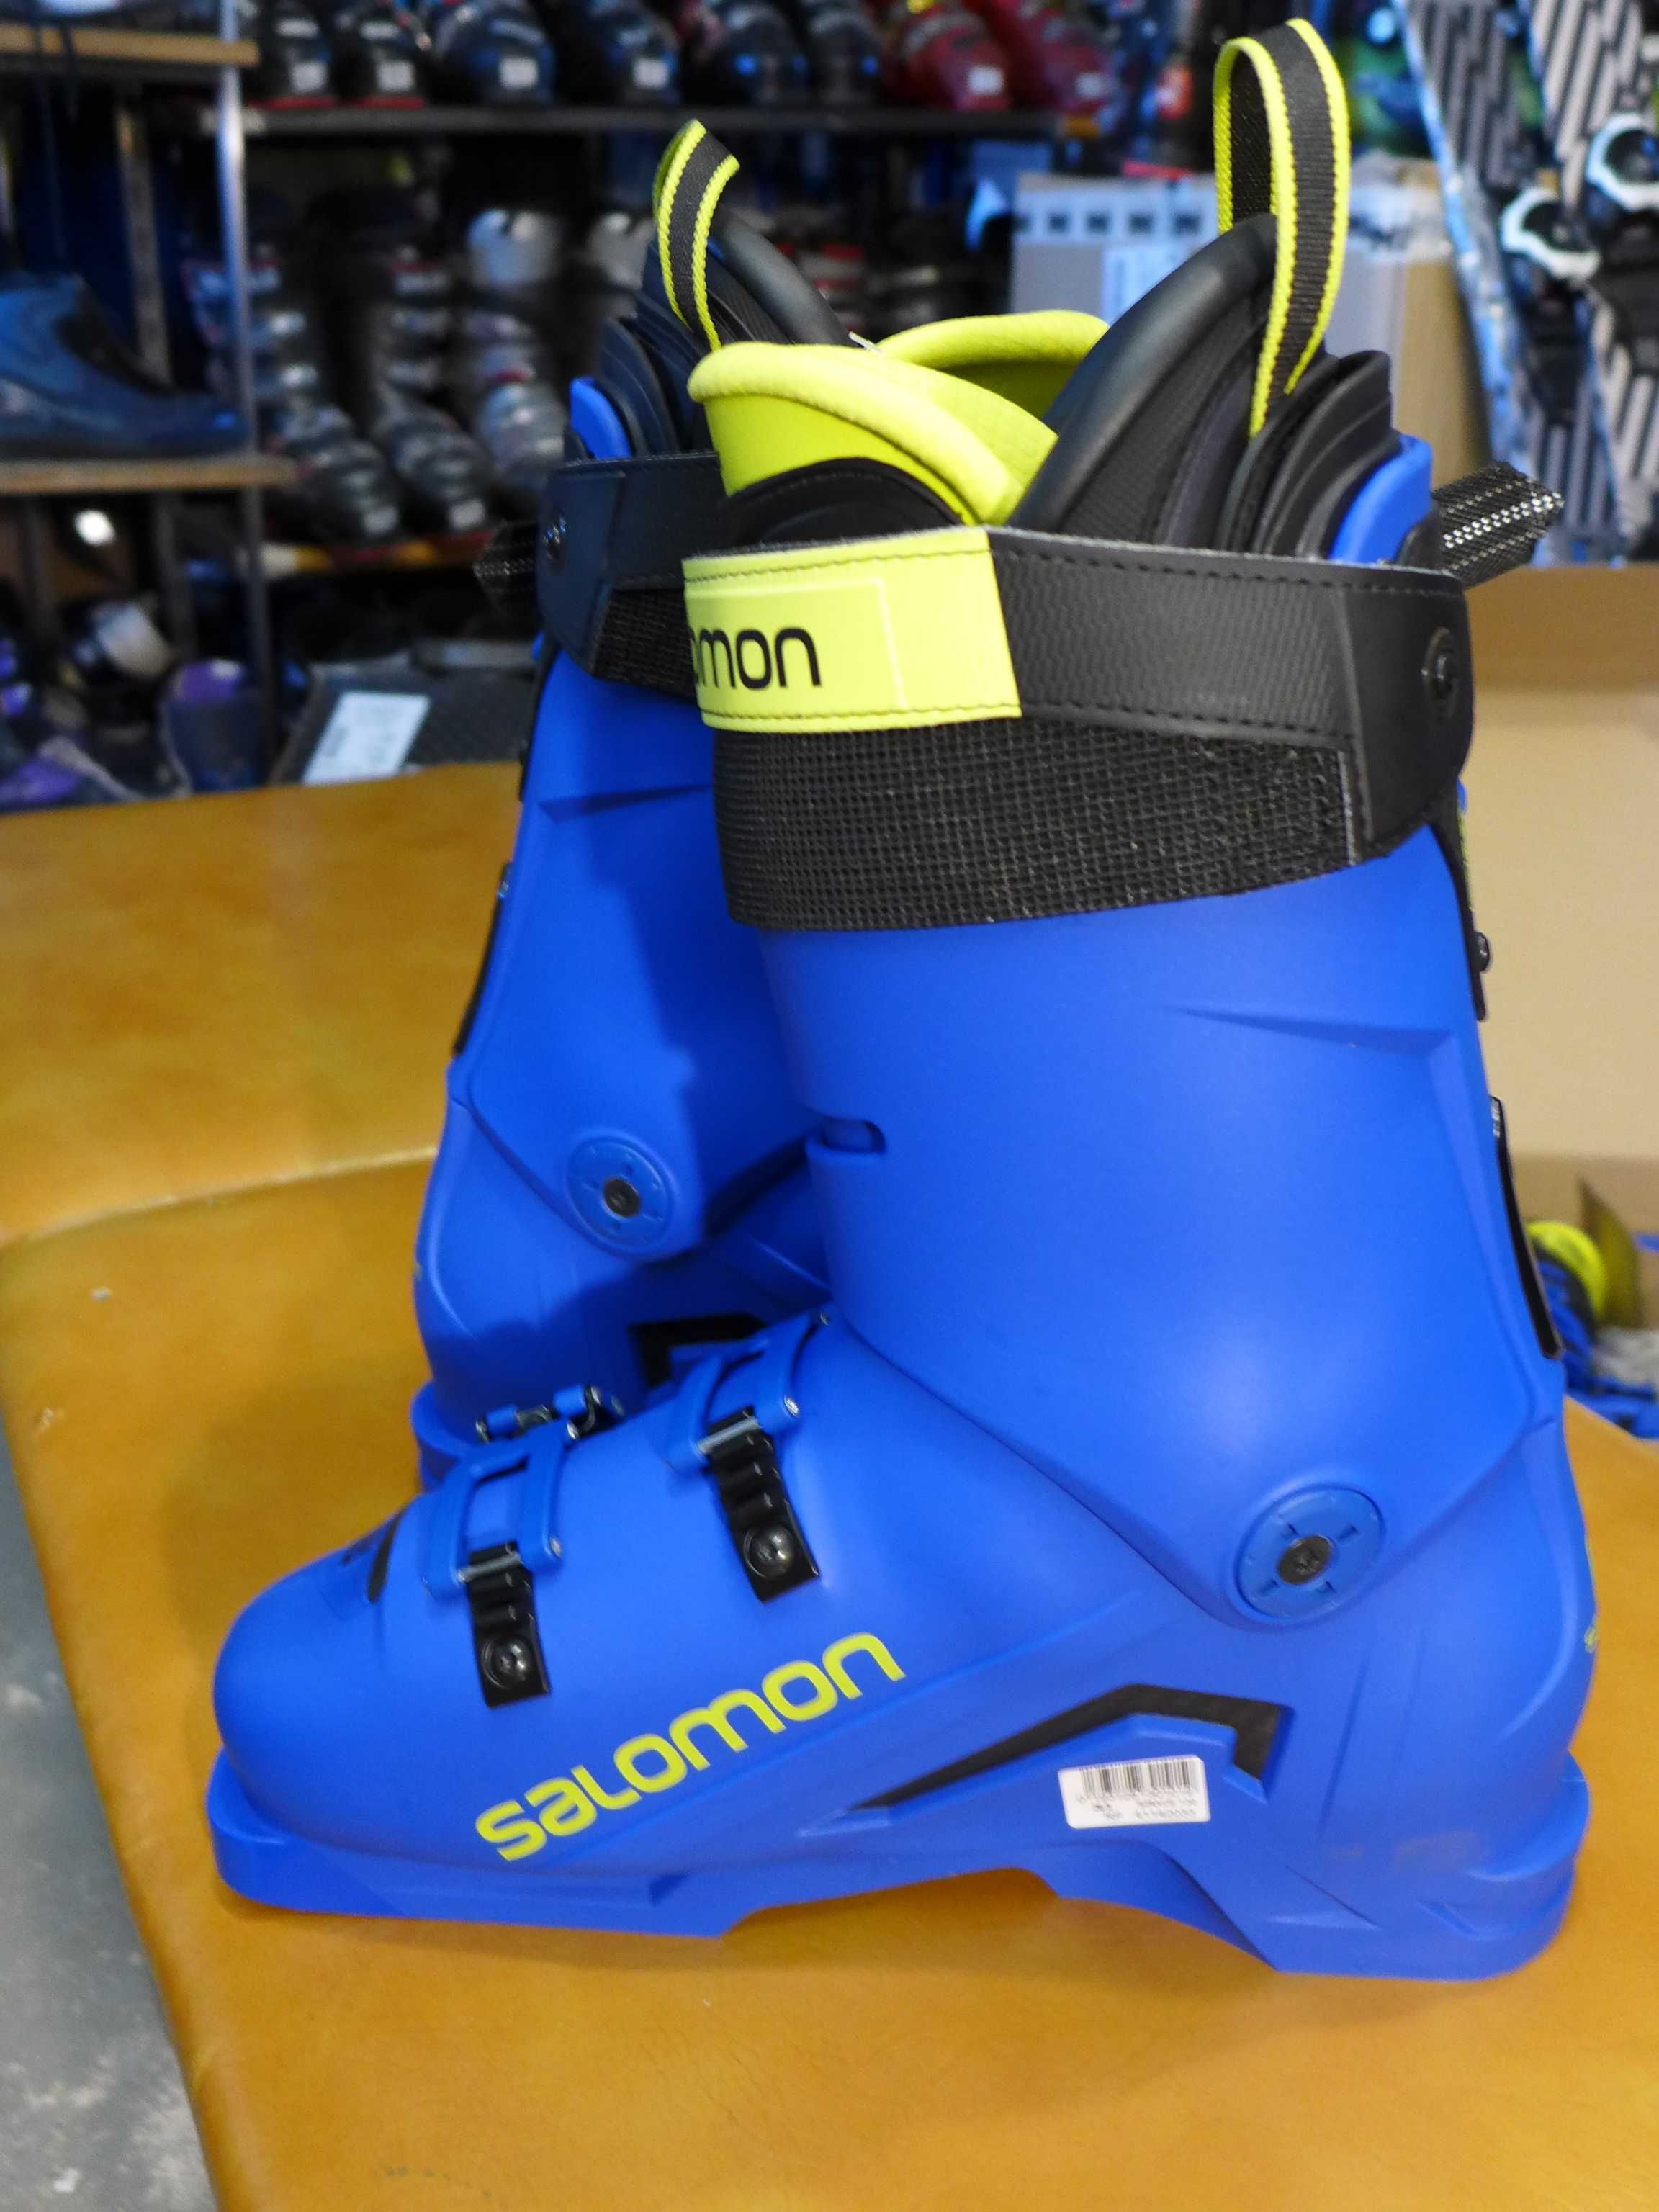 Buty narciarskie SALOMON Race 130 r. 28,5 cm